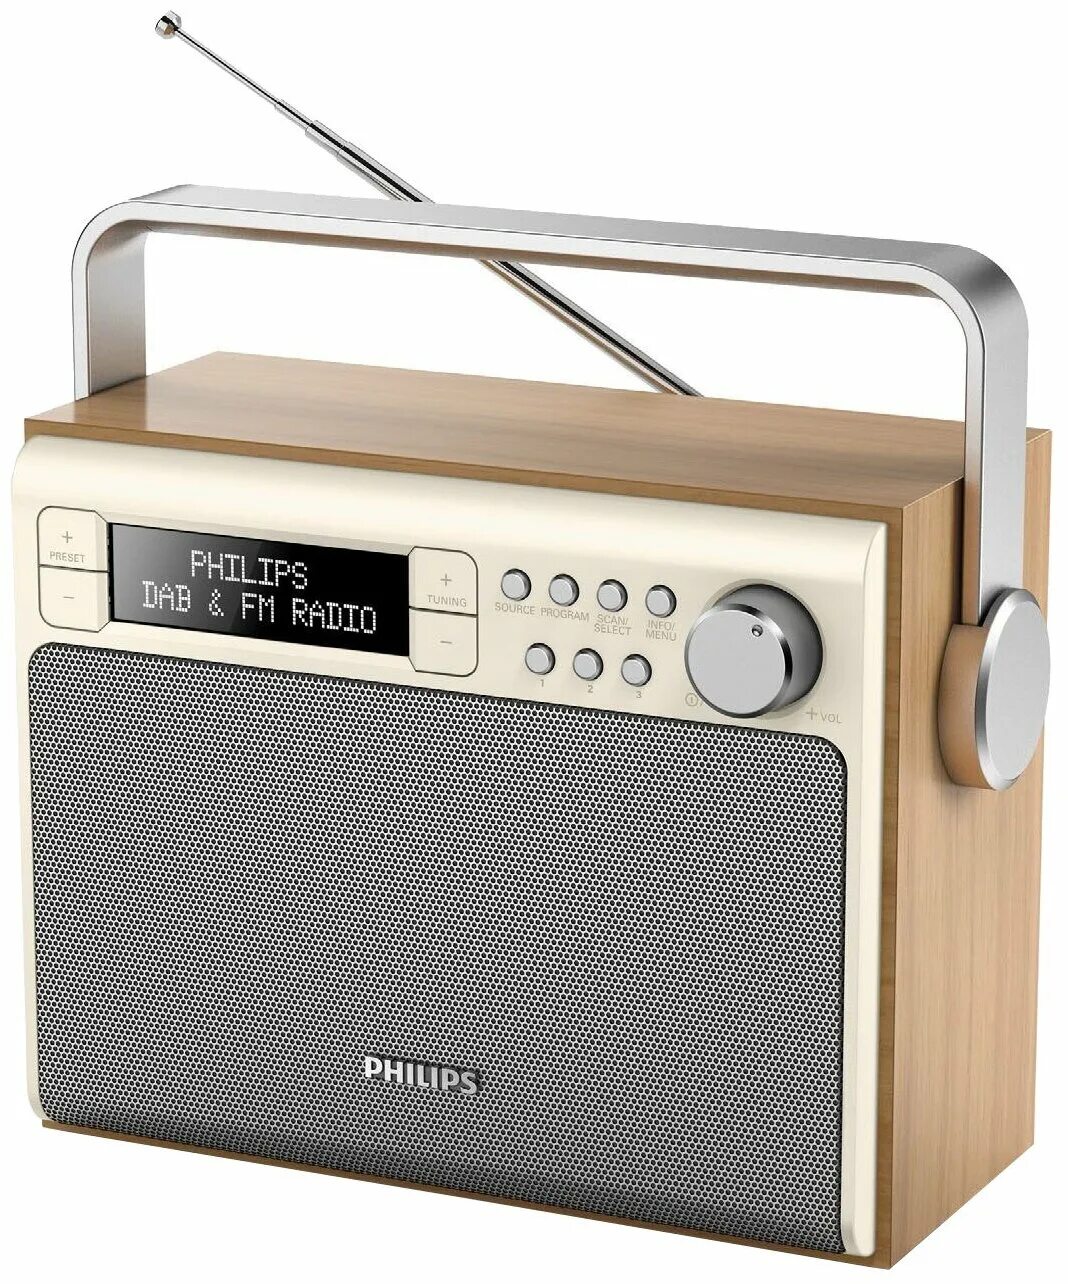 Где купить радио. Philips ae5020. Радиоприемник Philips ae5020b. Радиоприемник Philips ae5220b. Радиоприемник Филипс 70х.